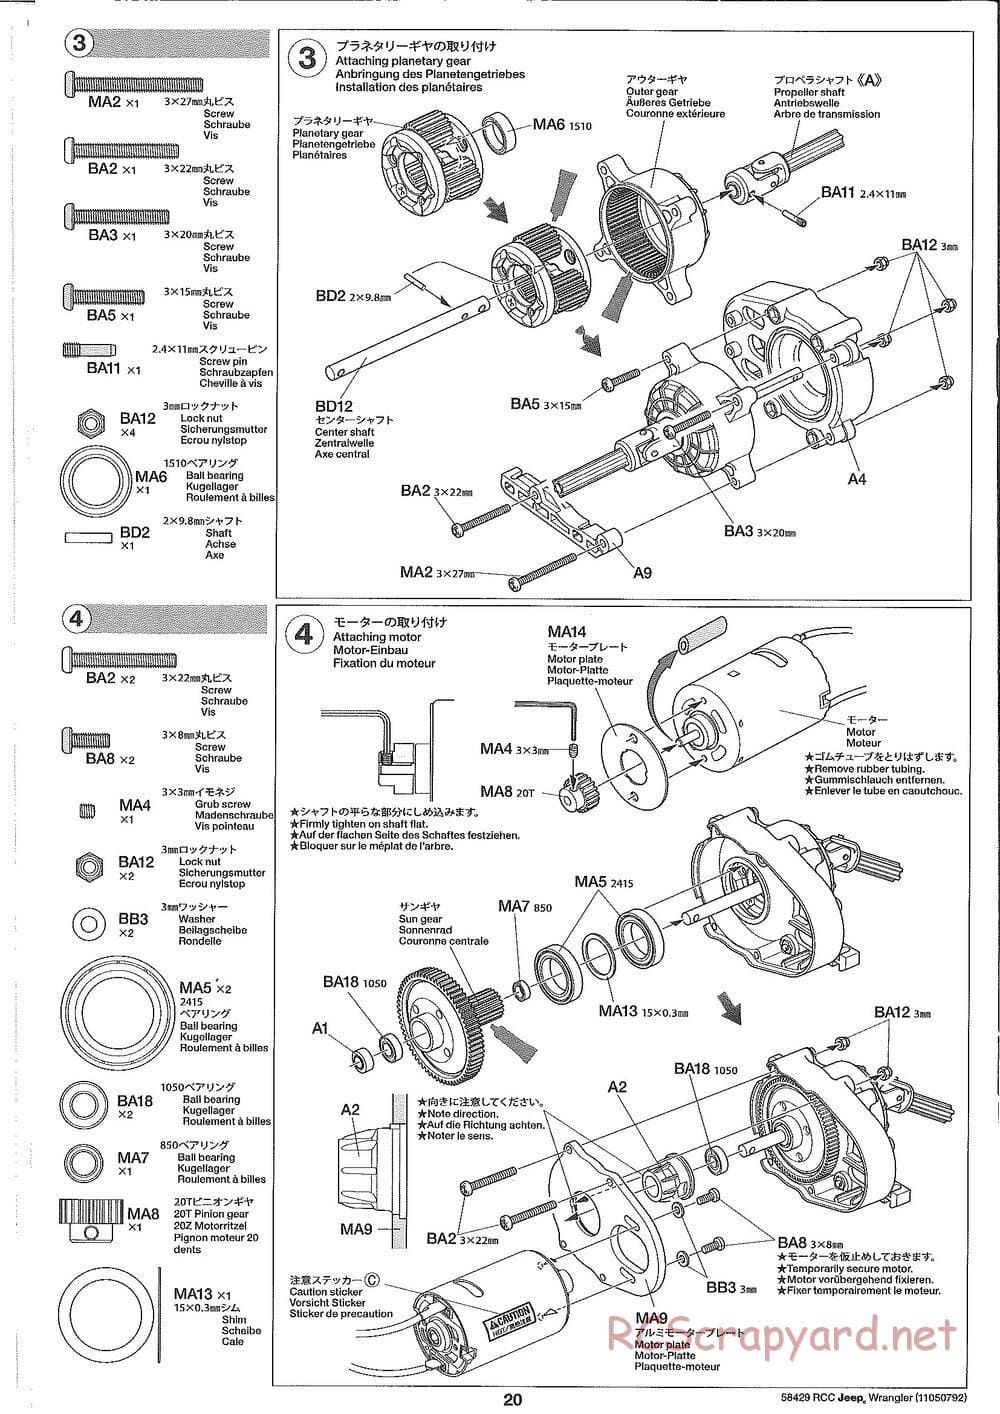 Tamiya - Jeep Wrangler - CR-01 Chassis - Manual - Page 20